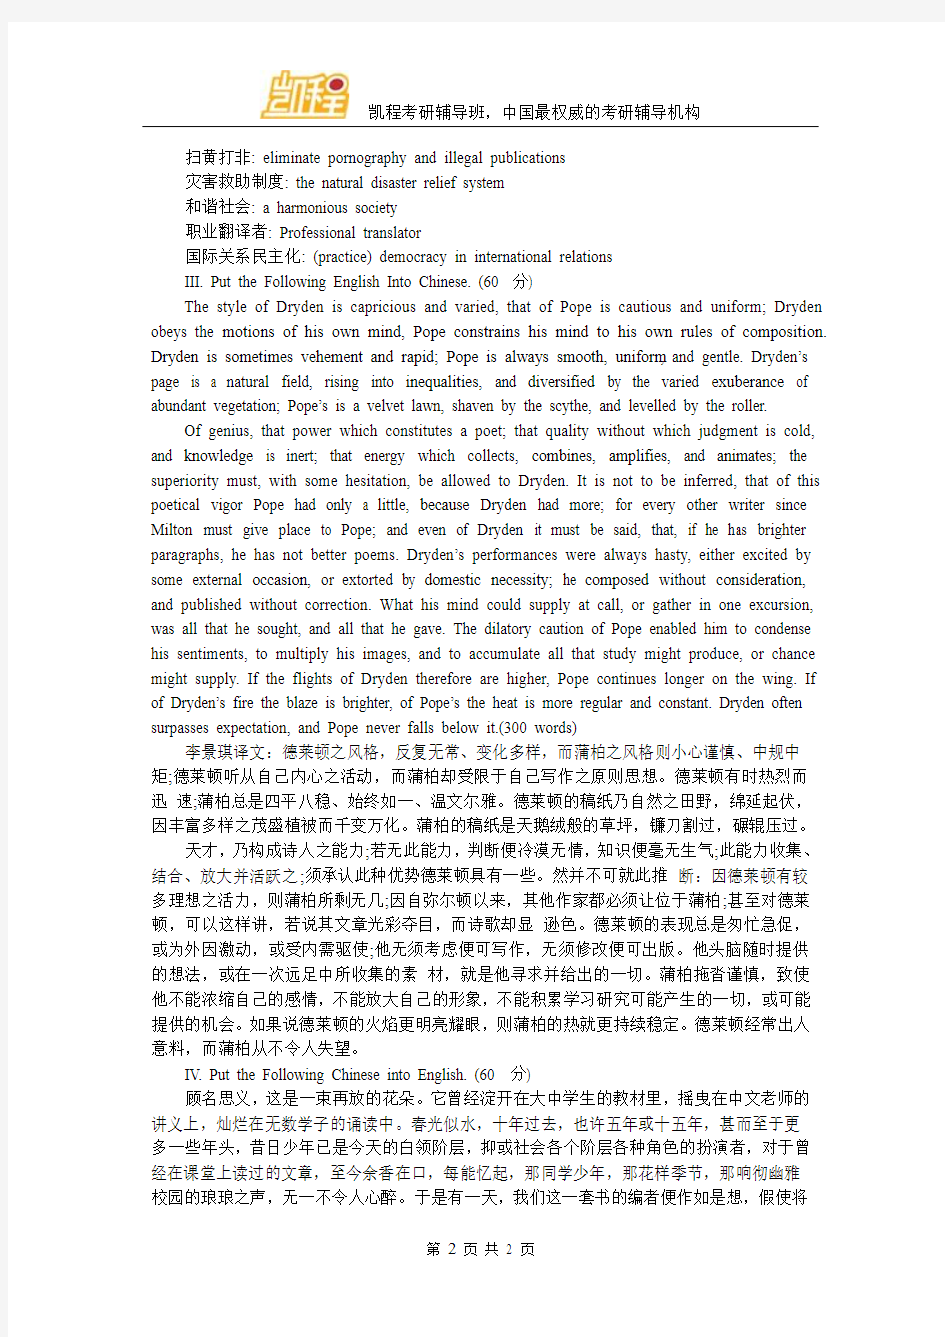 武汉大学2010年翻译硕士考研真题及答案